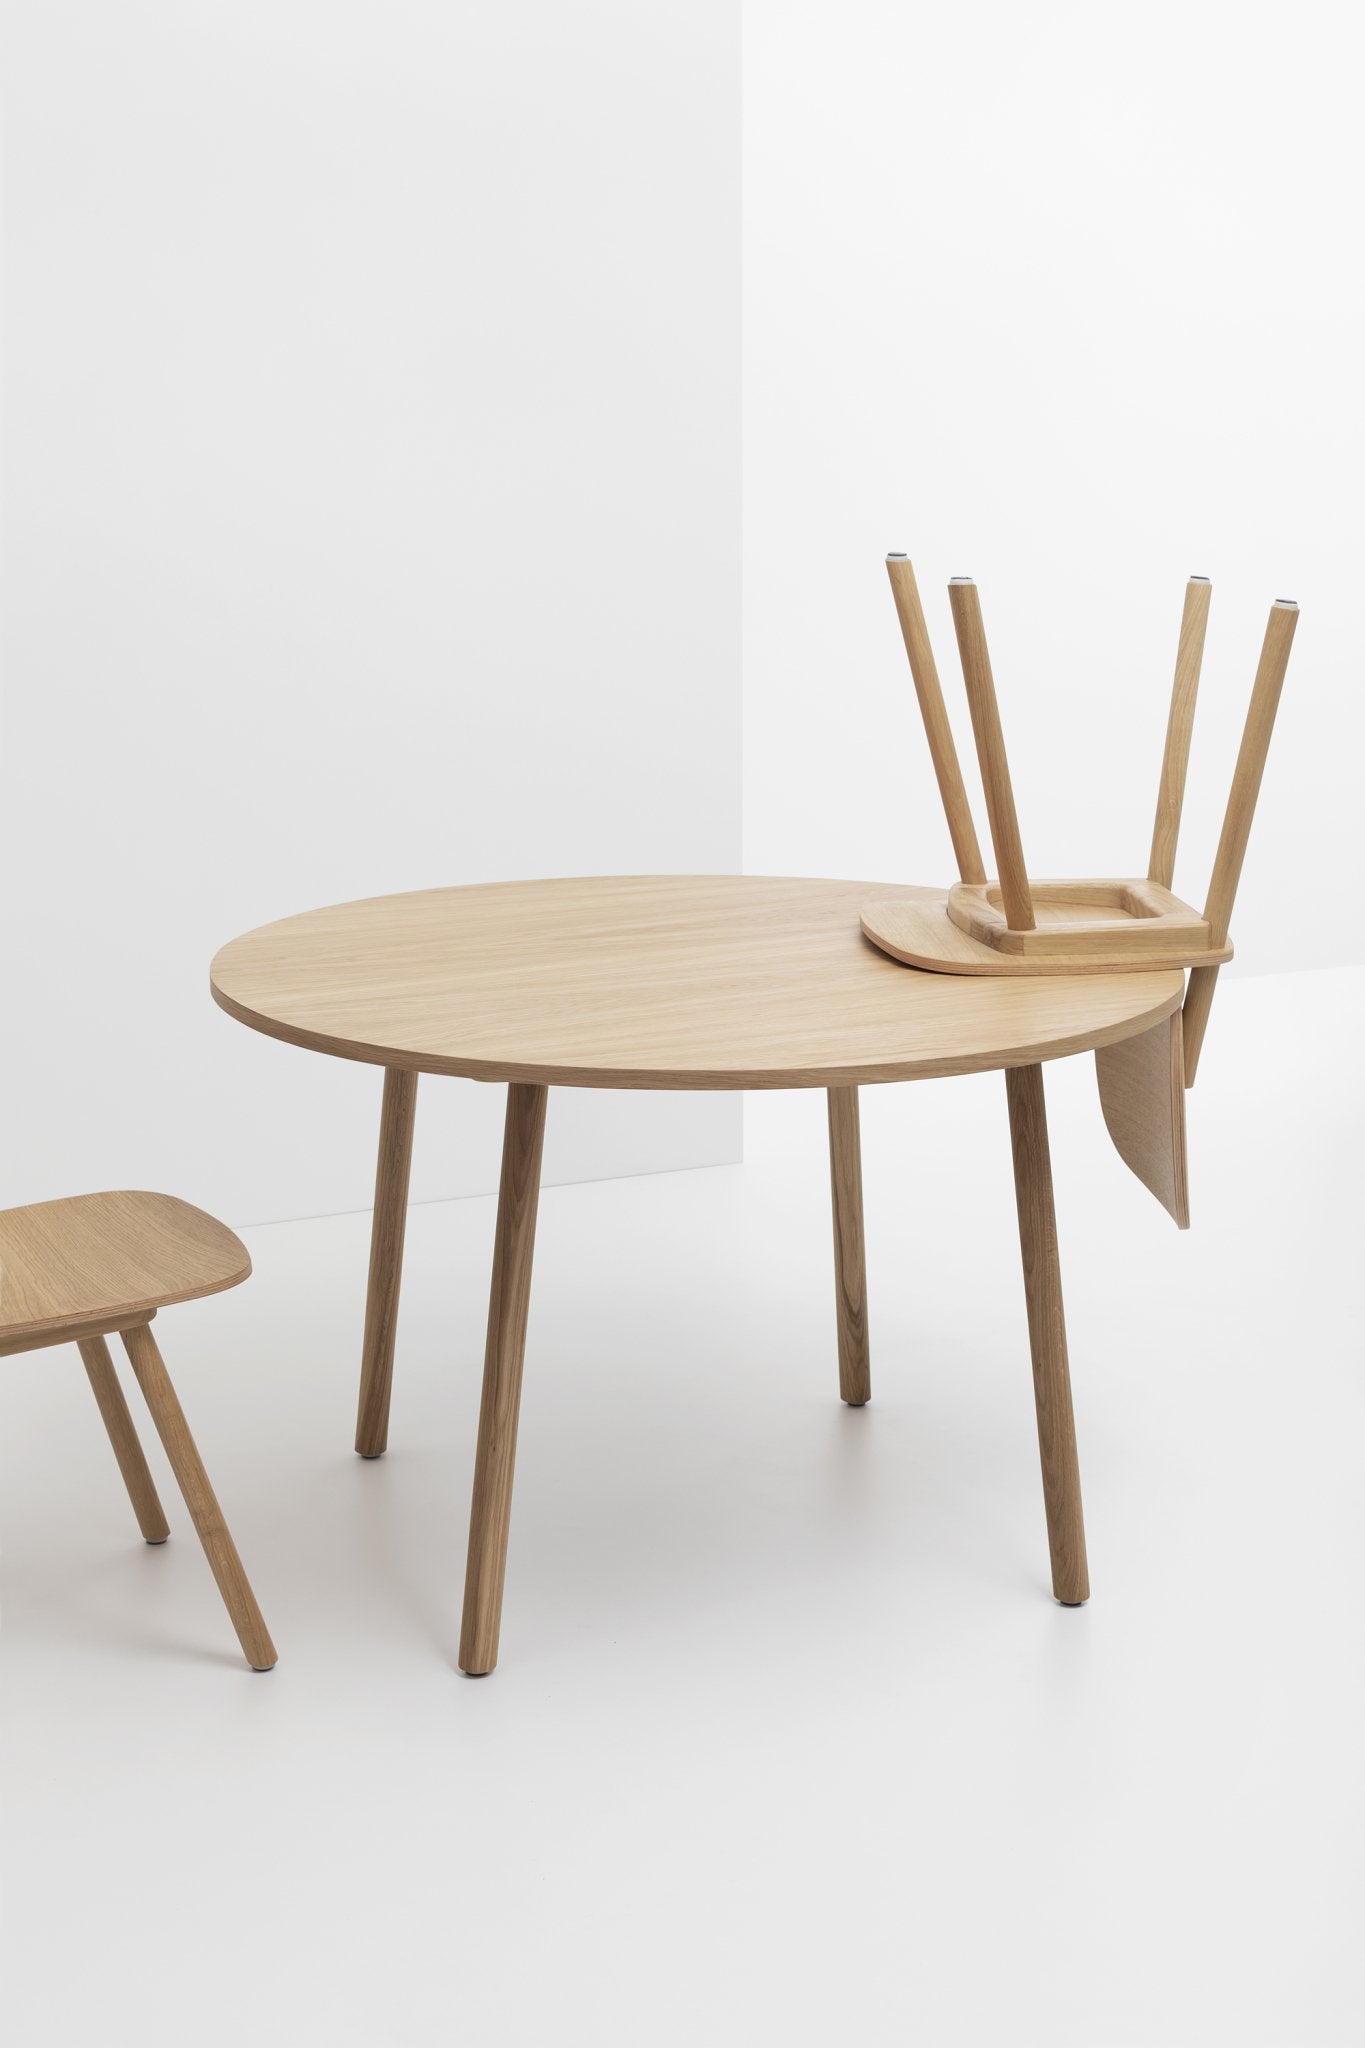 De eiken houten grote PADDLE Round Table van cruso is geschikt voor verschillende behoeften en ruimtes.